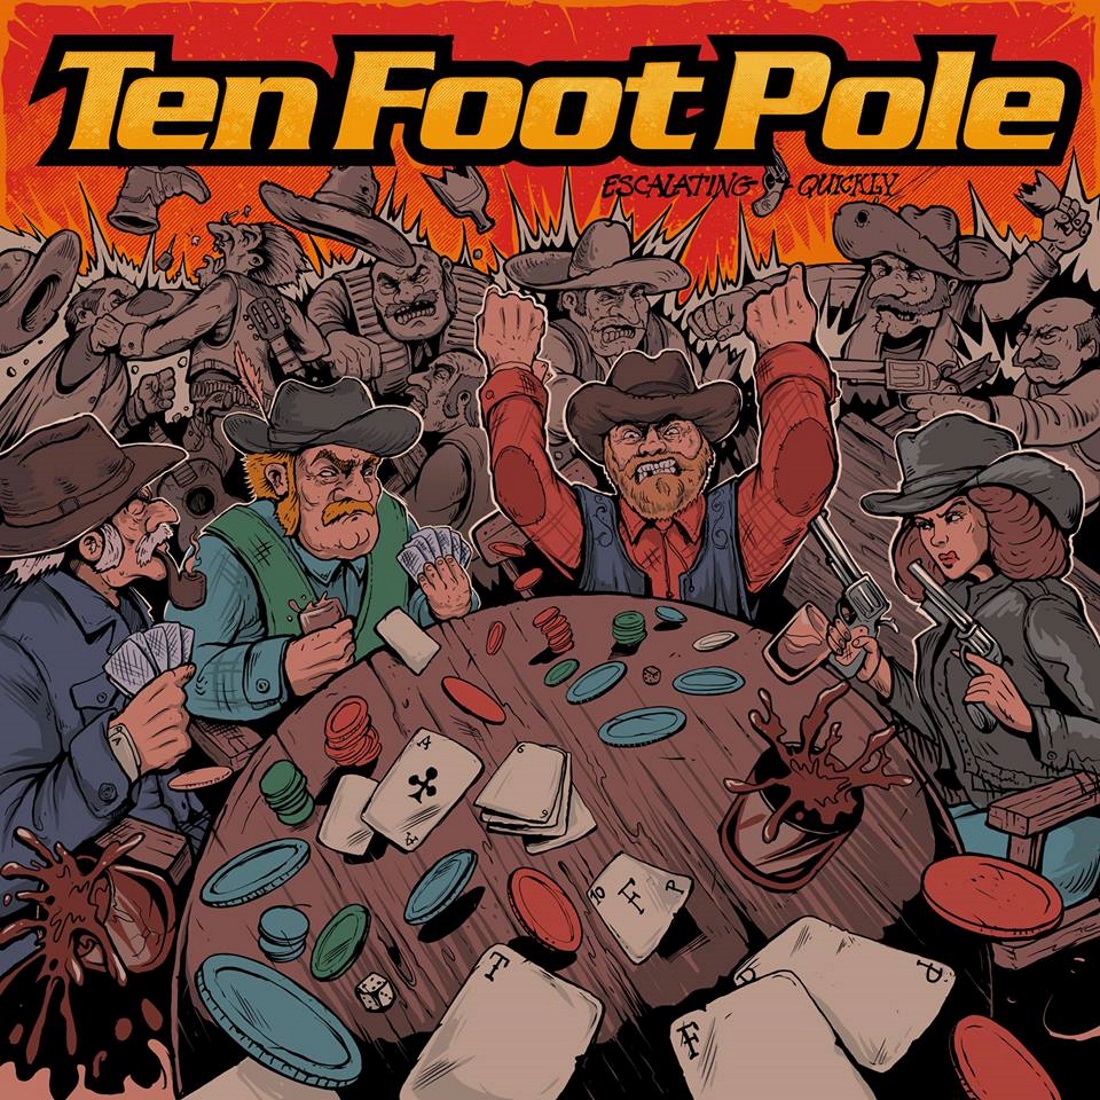 TEN FOOT POLE!